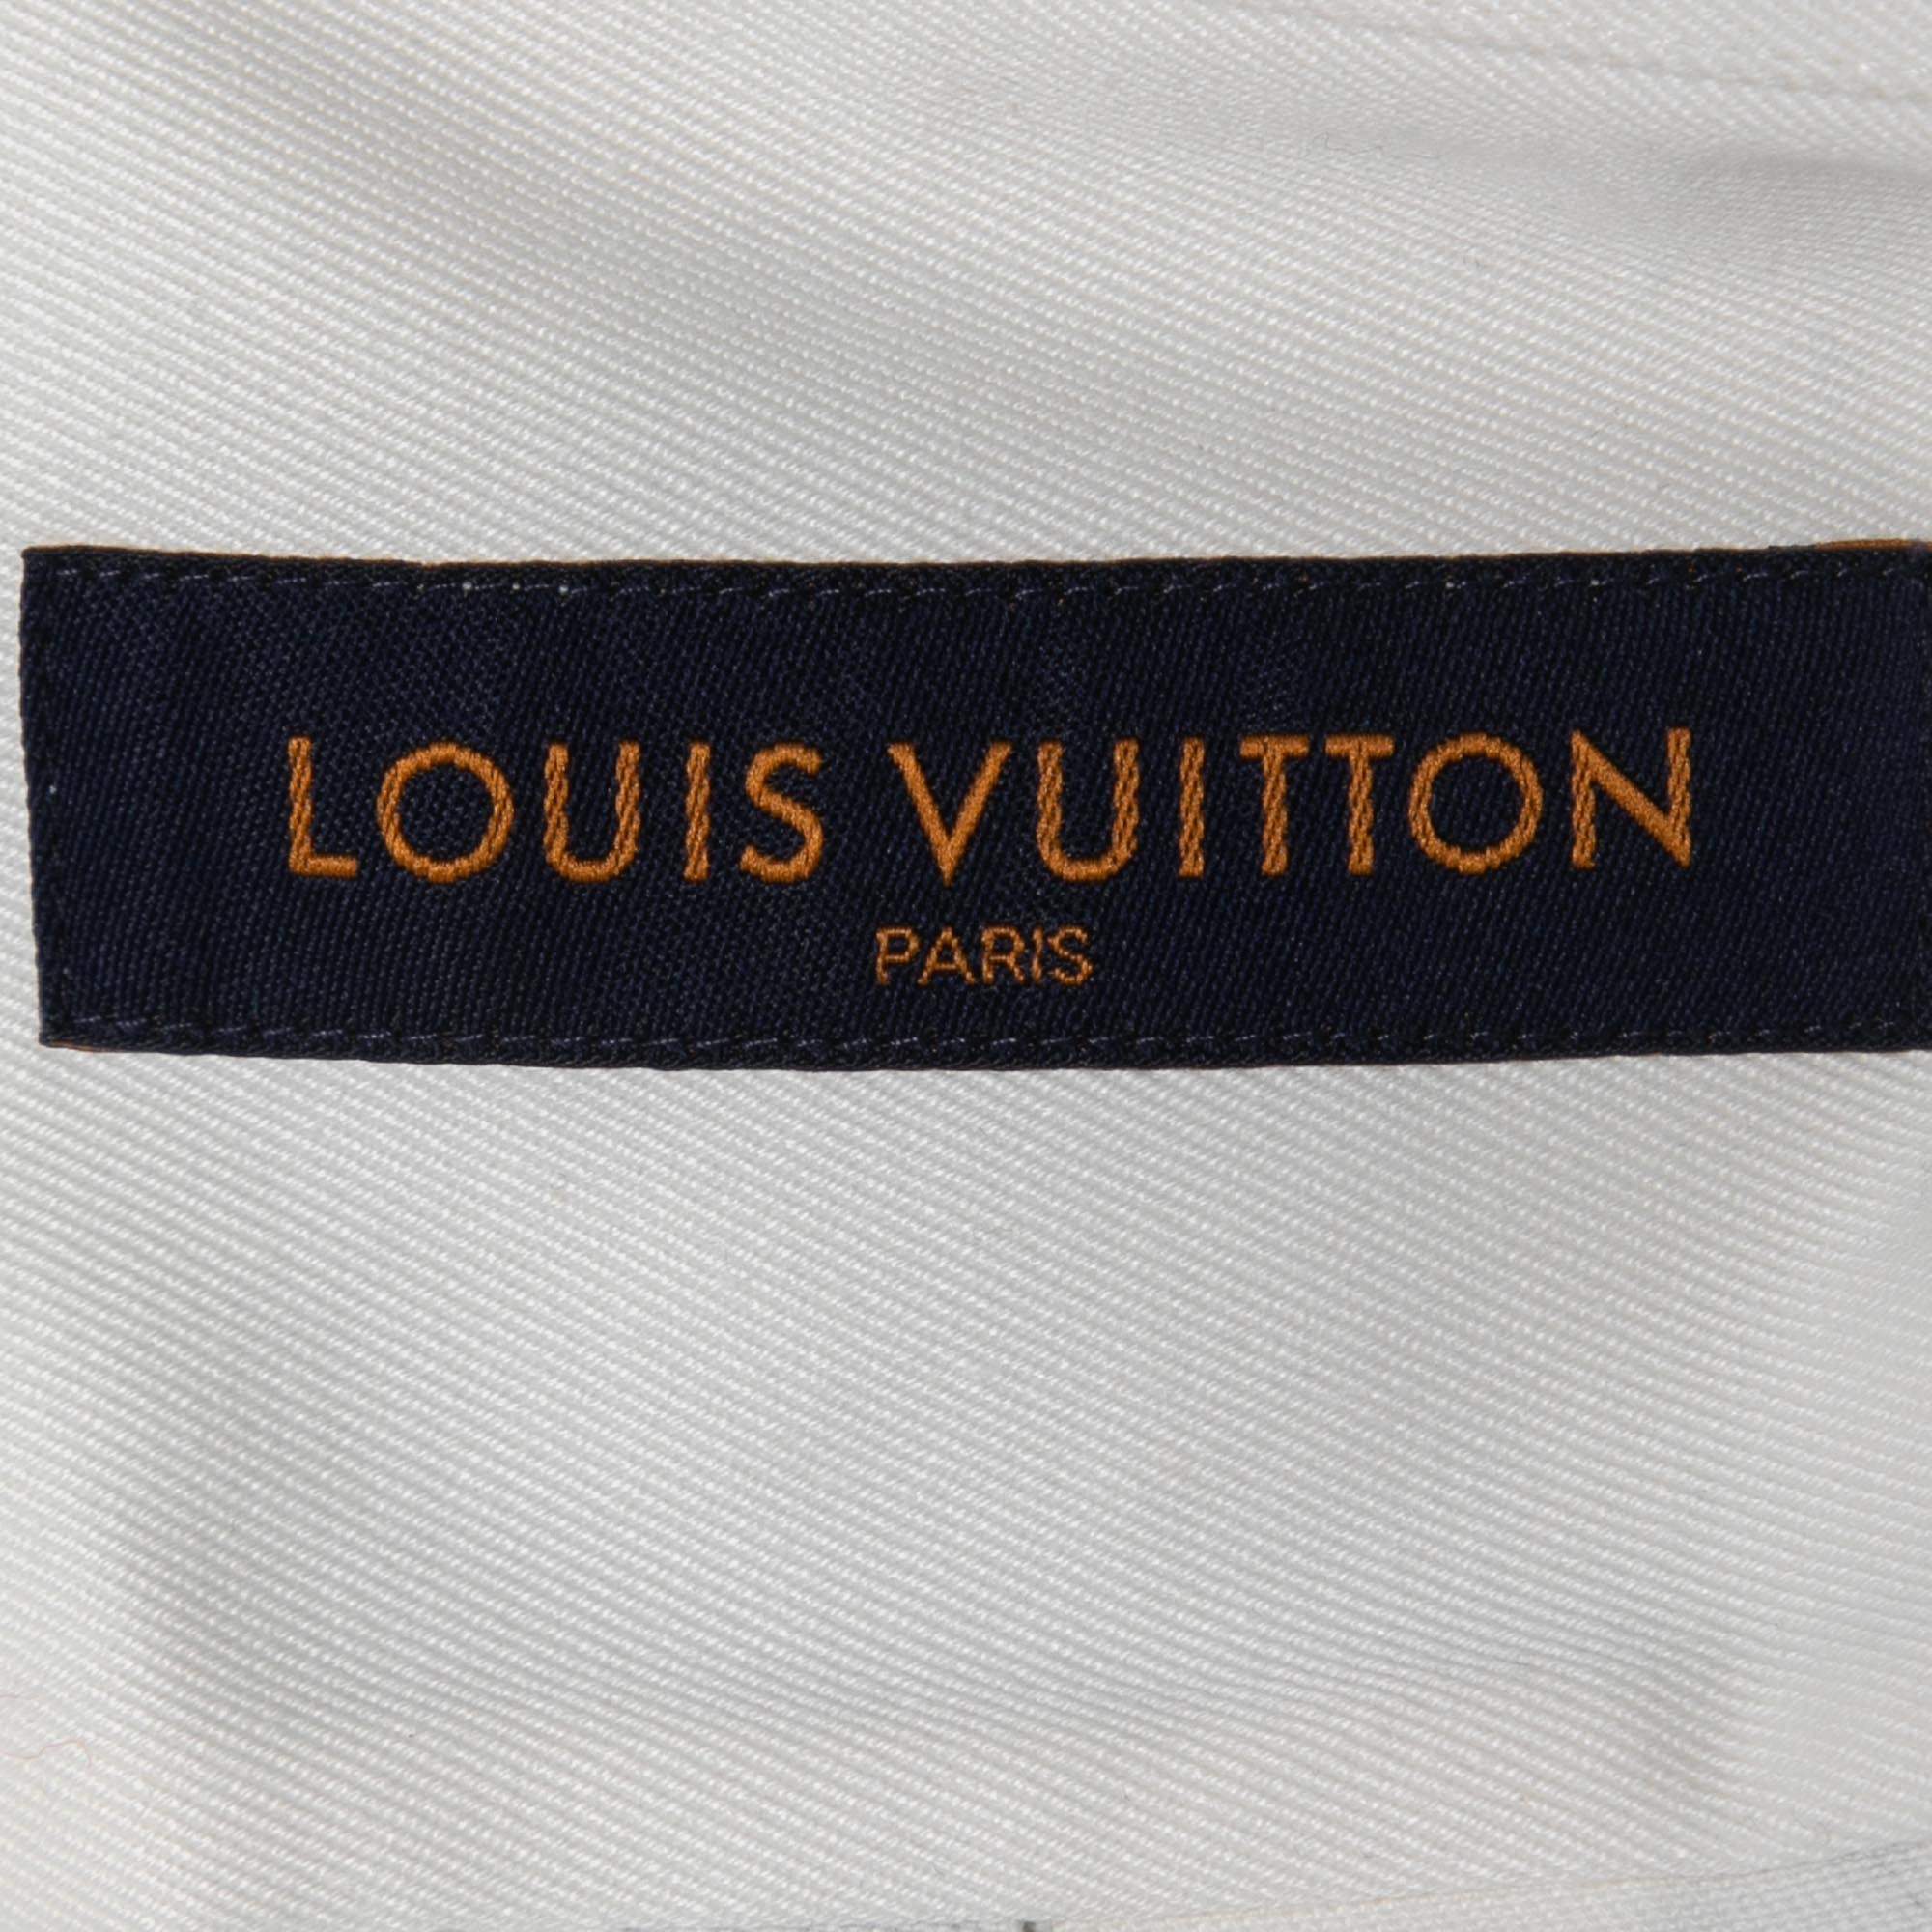 Louis Vuitton New Walkers Print DNA Collar Shirt